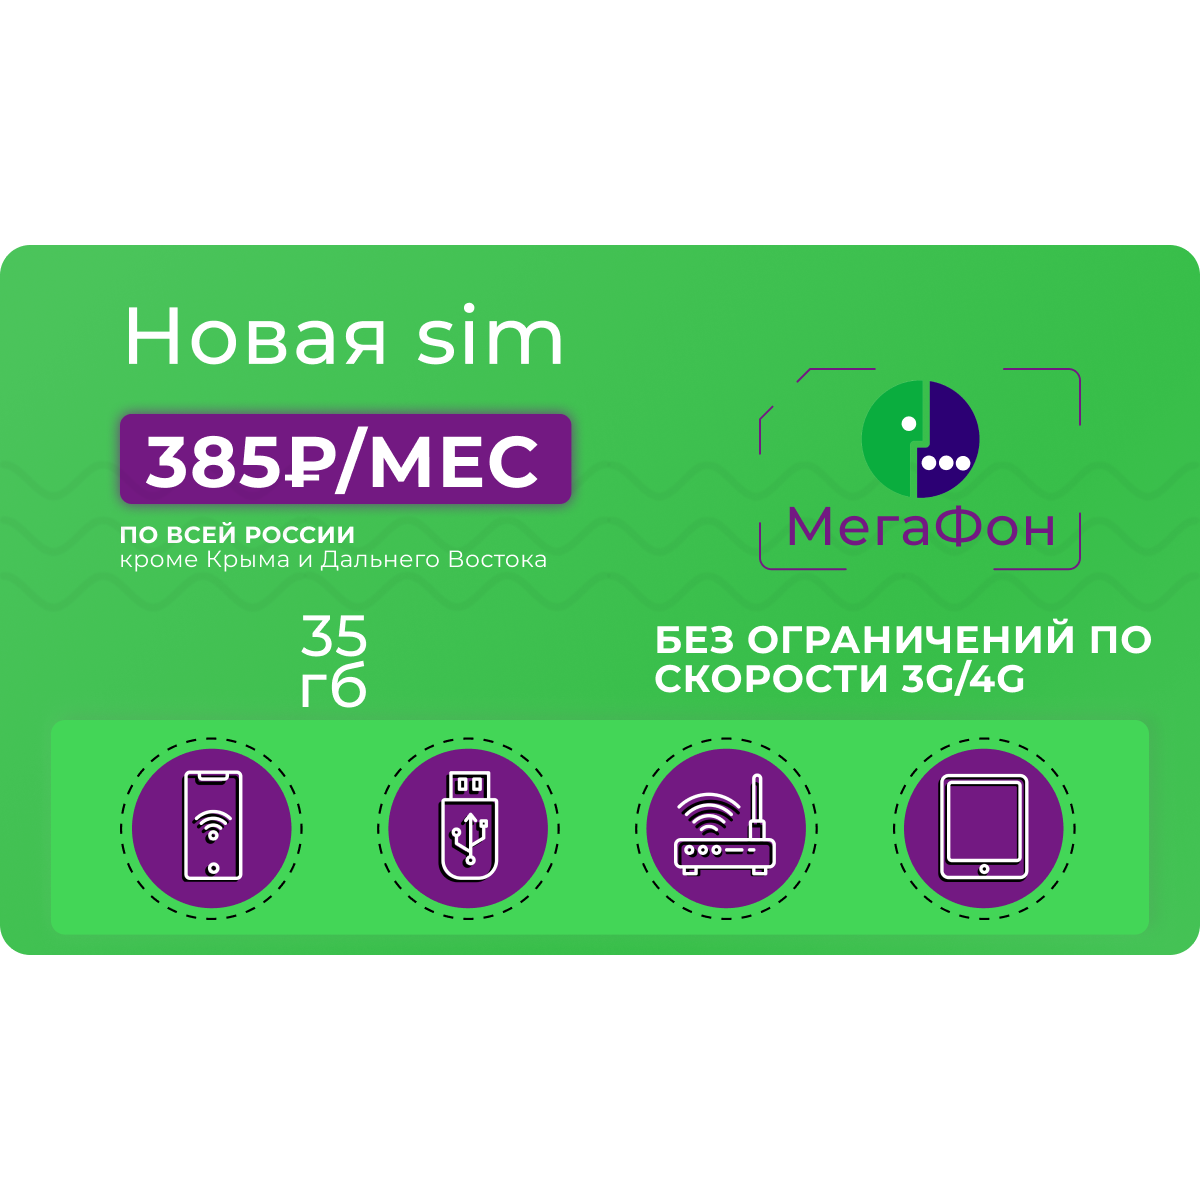 Сим-карта Мегафон 35 гб за 385 руб/мес